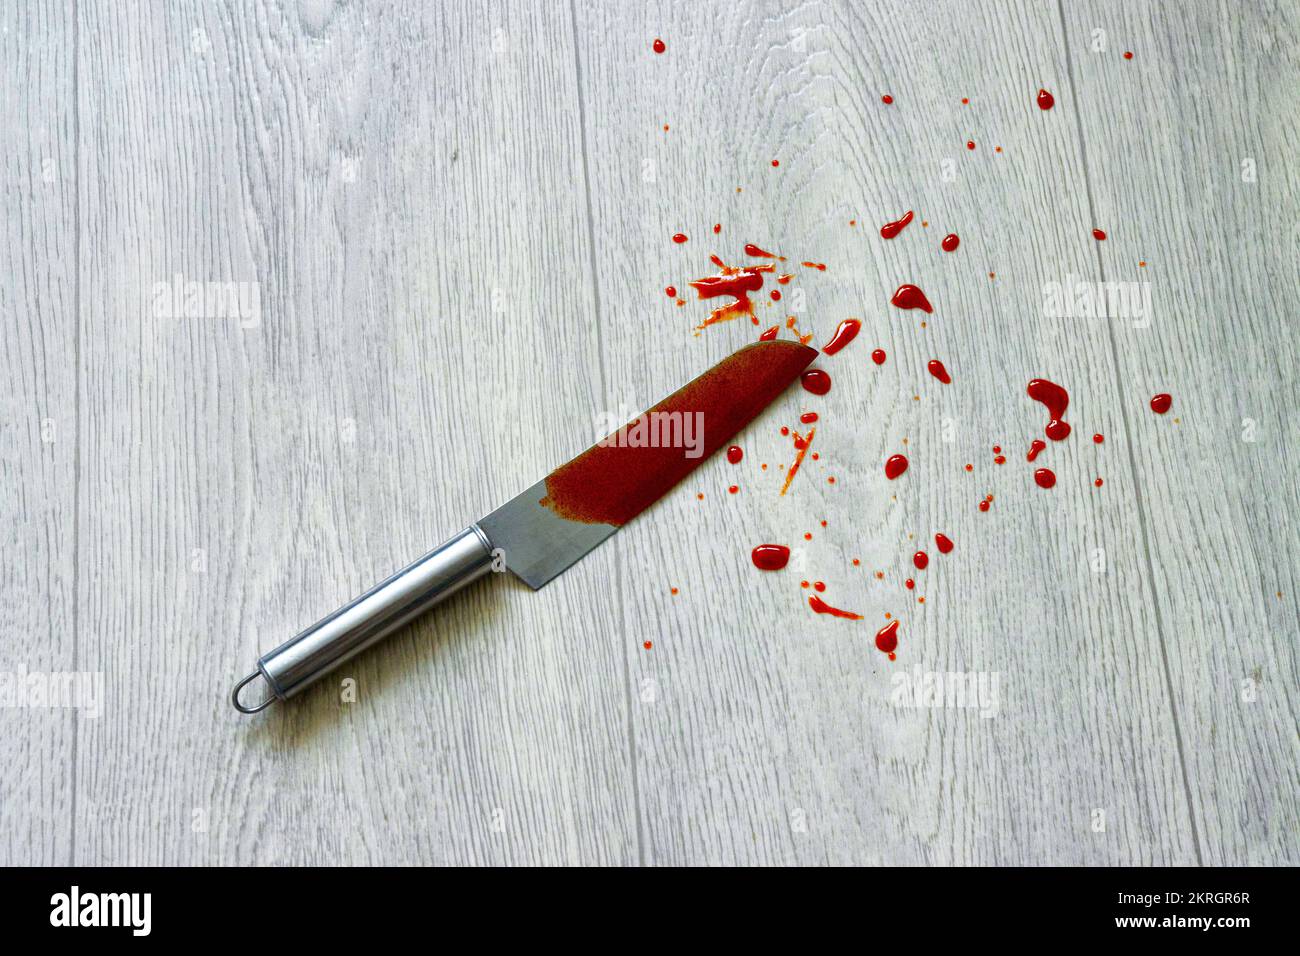 Un couteau avec une éclaboussure de sang se trouve sur le linoléum, en gros plan. Concept de crime, vol qualifié et vol, agression Banque D'Images